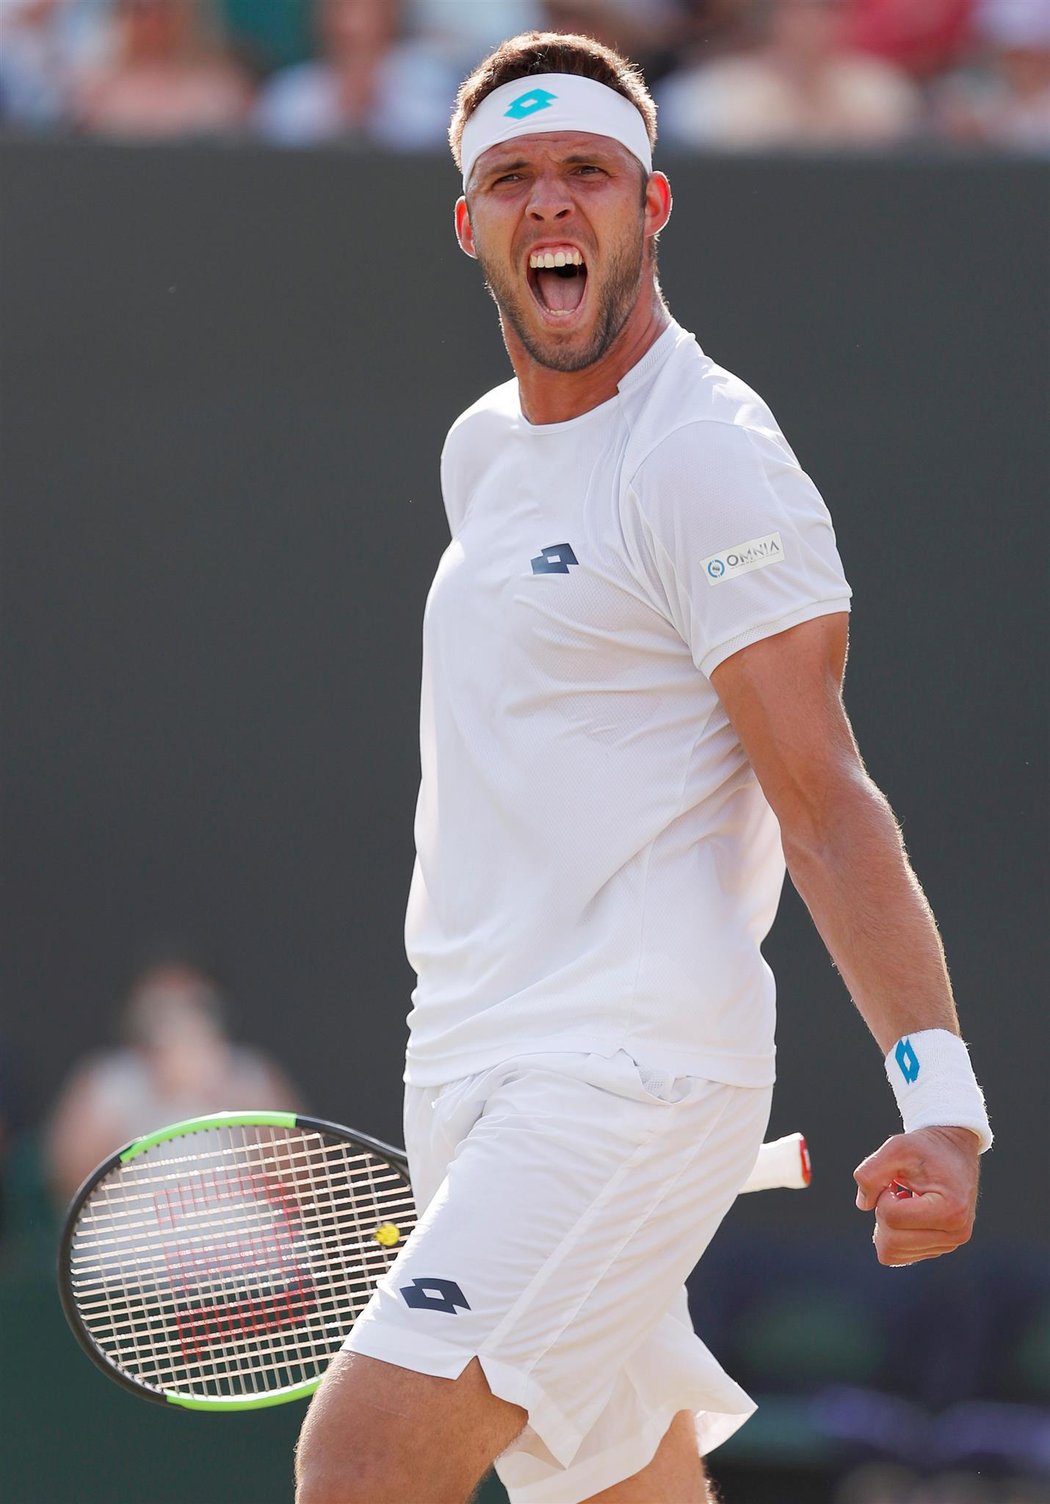 Český tenista Jiří Veselý během turnaje ve Wimbledonu, kde se mu na trávě hodně dařilo